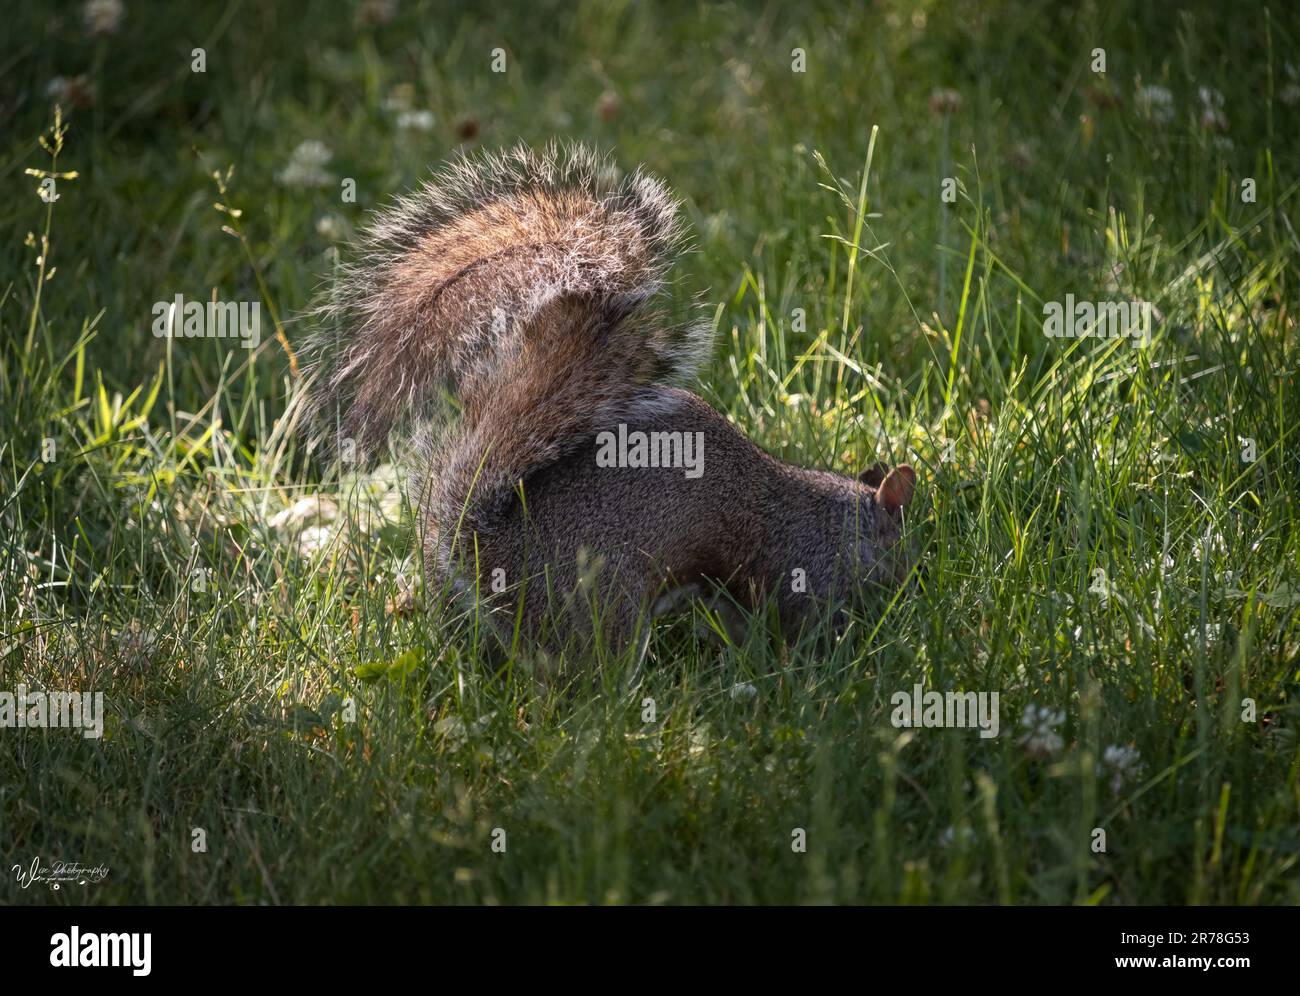 Écureuil gris de l'est, Sciurus carolinensis, enterrant un écrou dans le sol dans une zone de lumière du soleil entourée d'herbe et avec une queue moelleuse proéminente Banque D'Images